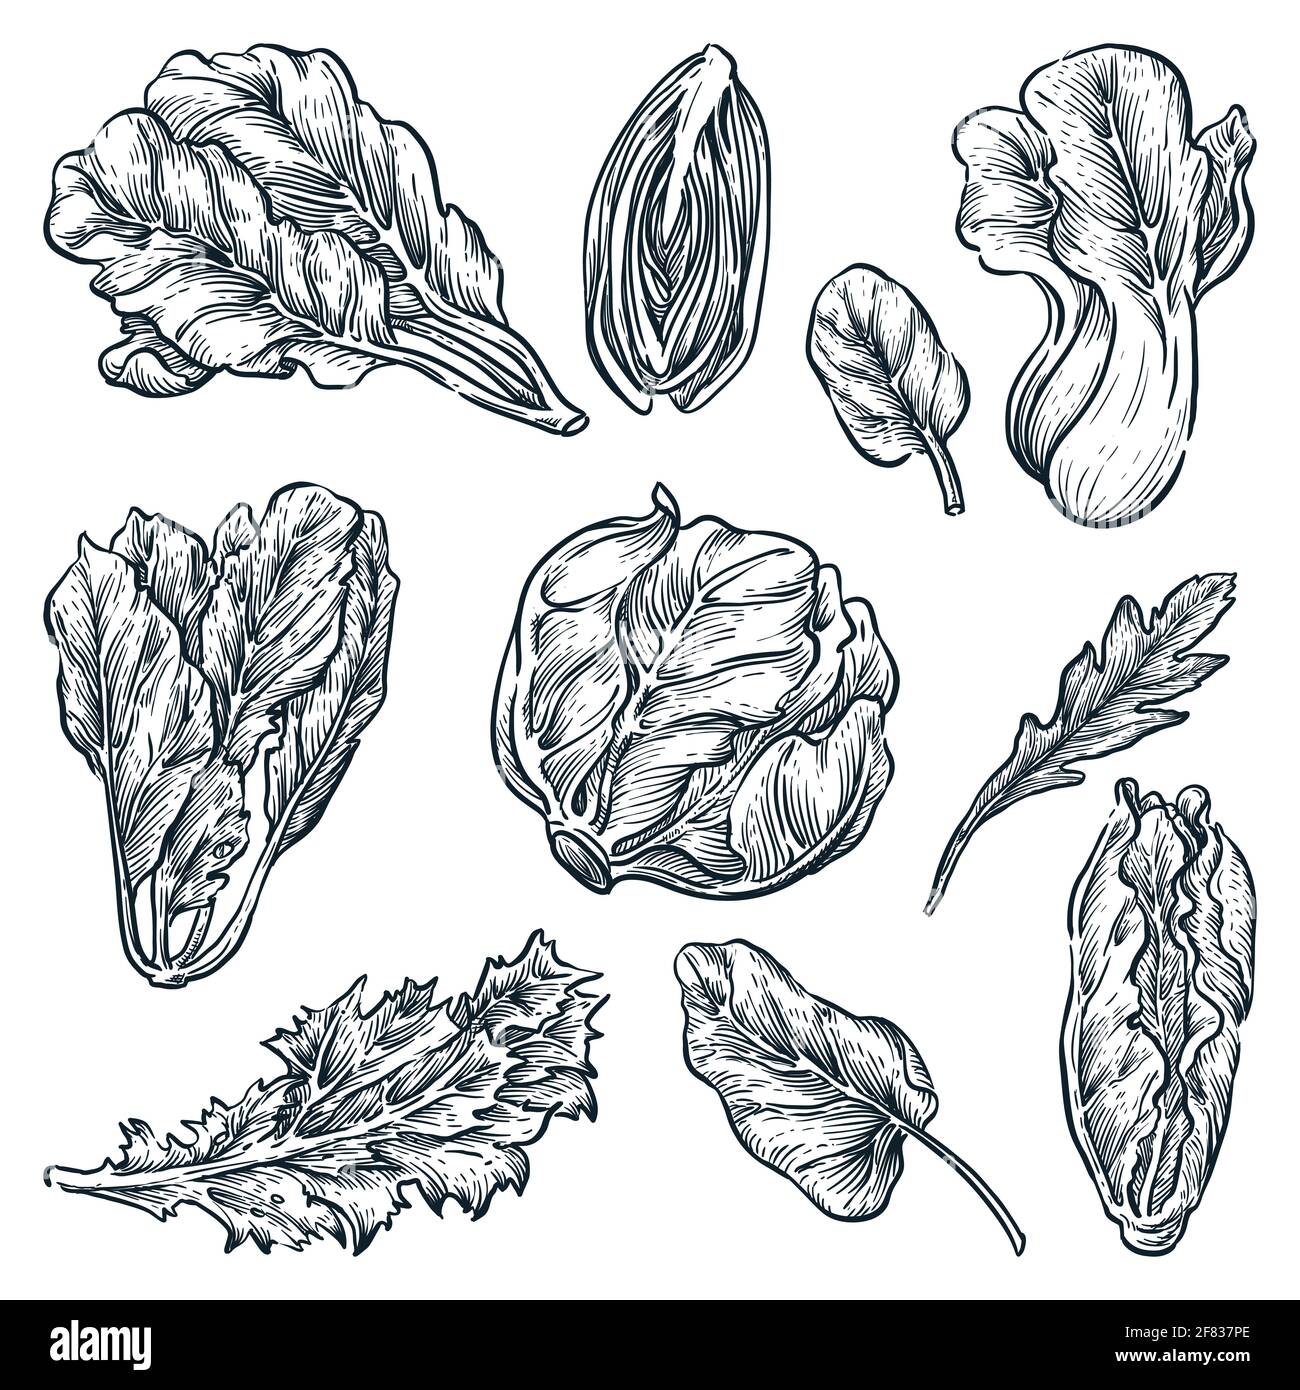 Grünes Blatt Gemüse Set, handgezeichnete isolierte Design-Elemente. Salatpflanzen, Skizzenvektor Illustration. Natürliche Bio-Lebensmittelzutaten Stock Vektor